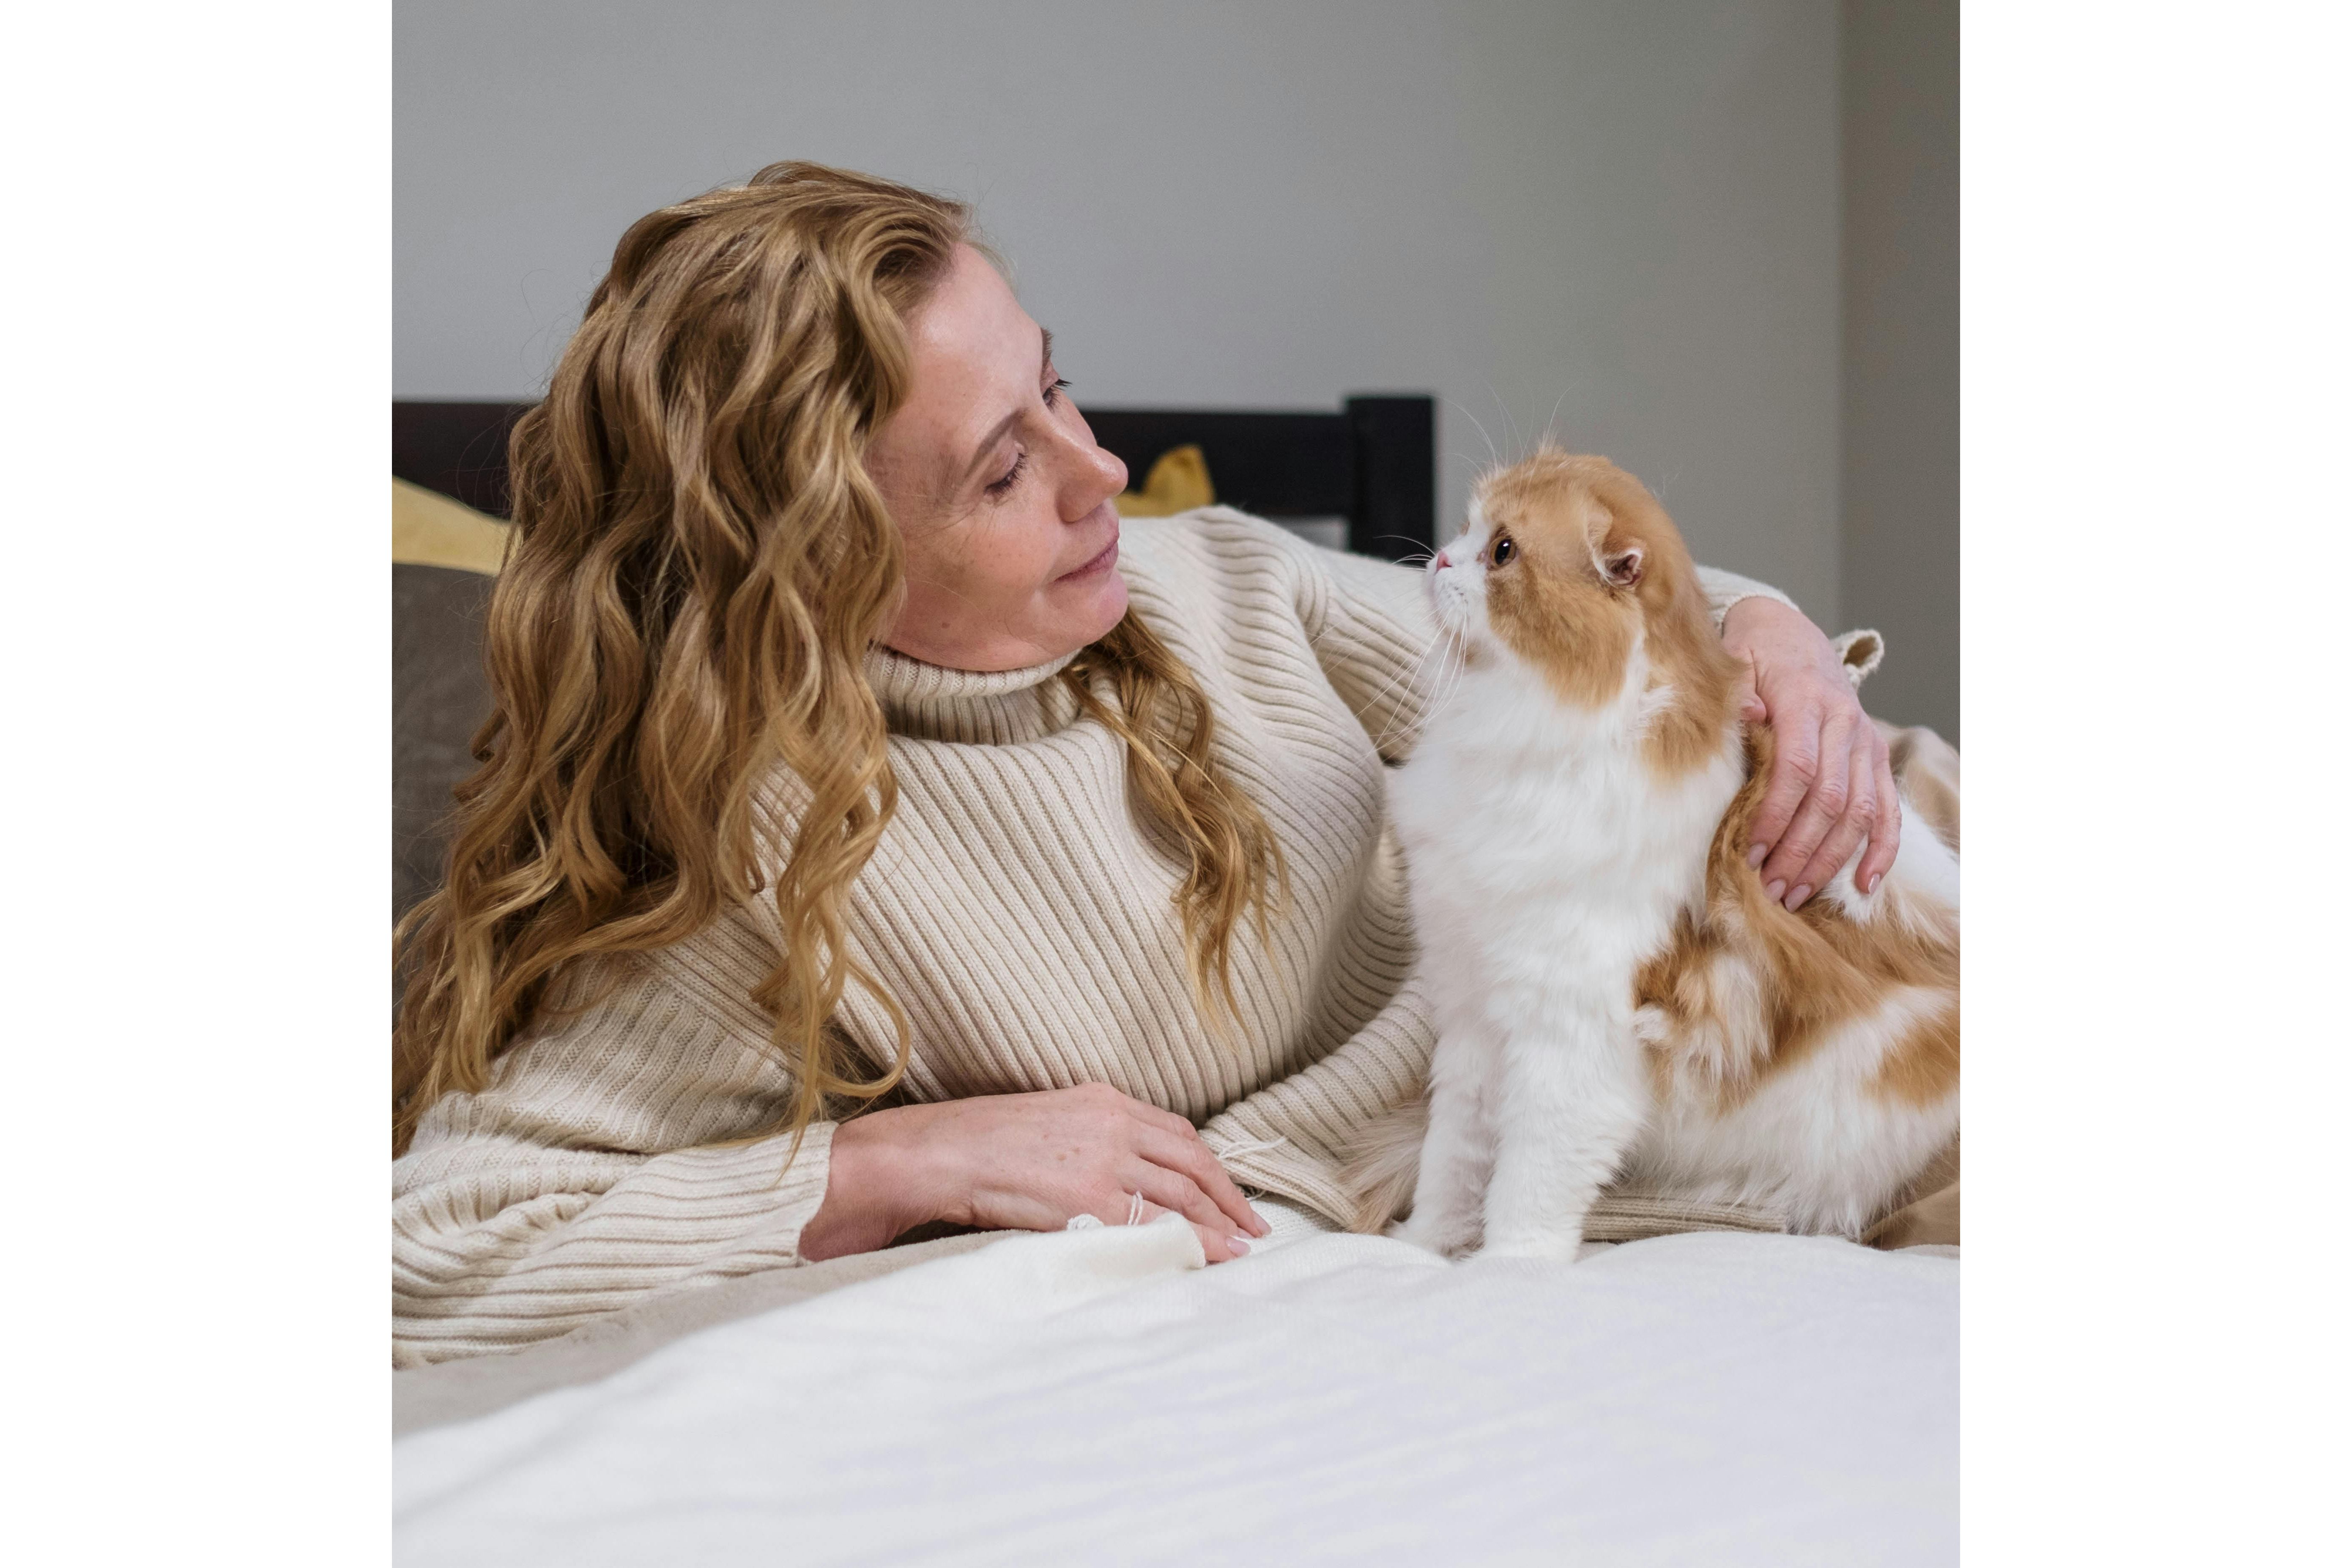 Mujer acostada en una cama con un gato. Foto: Pexels/cottonbro studio